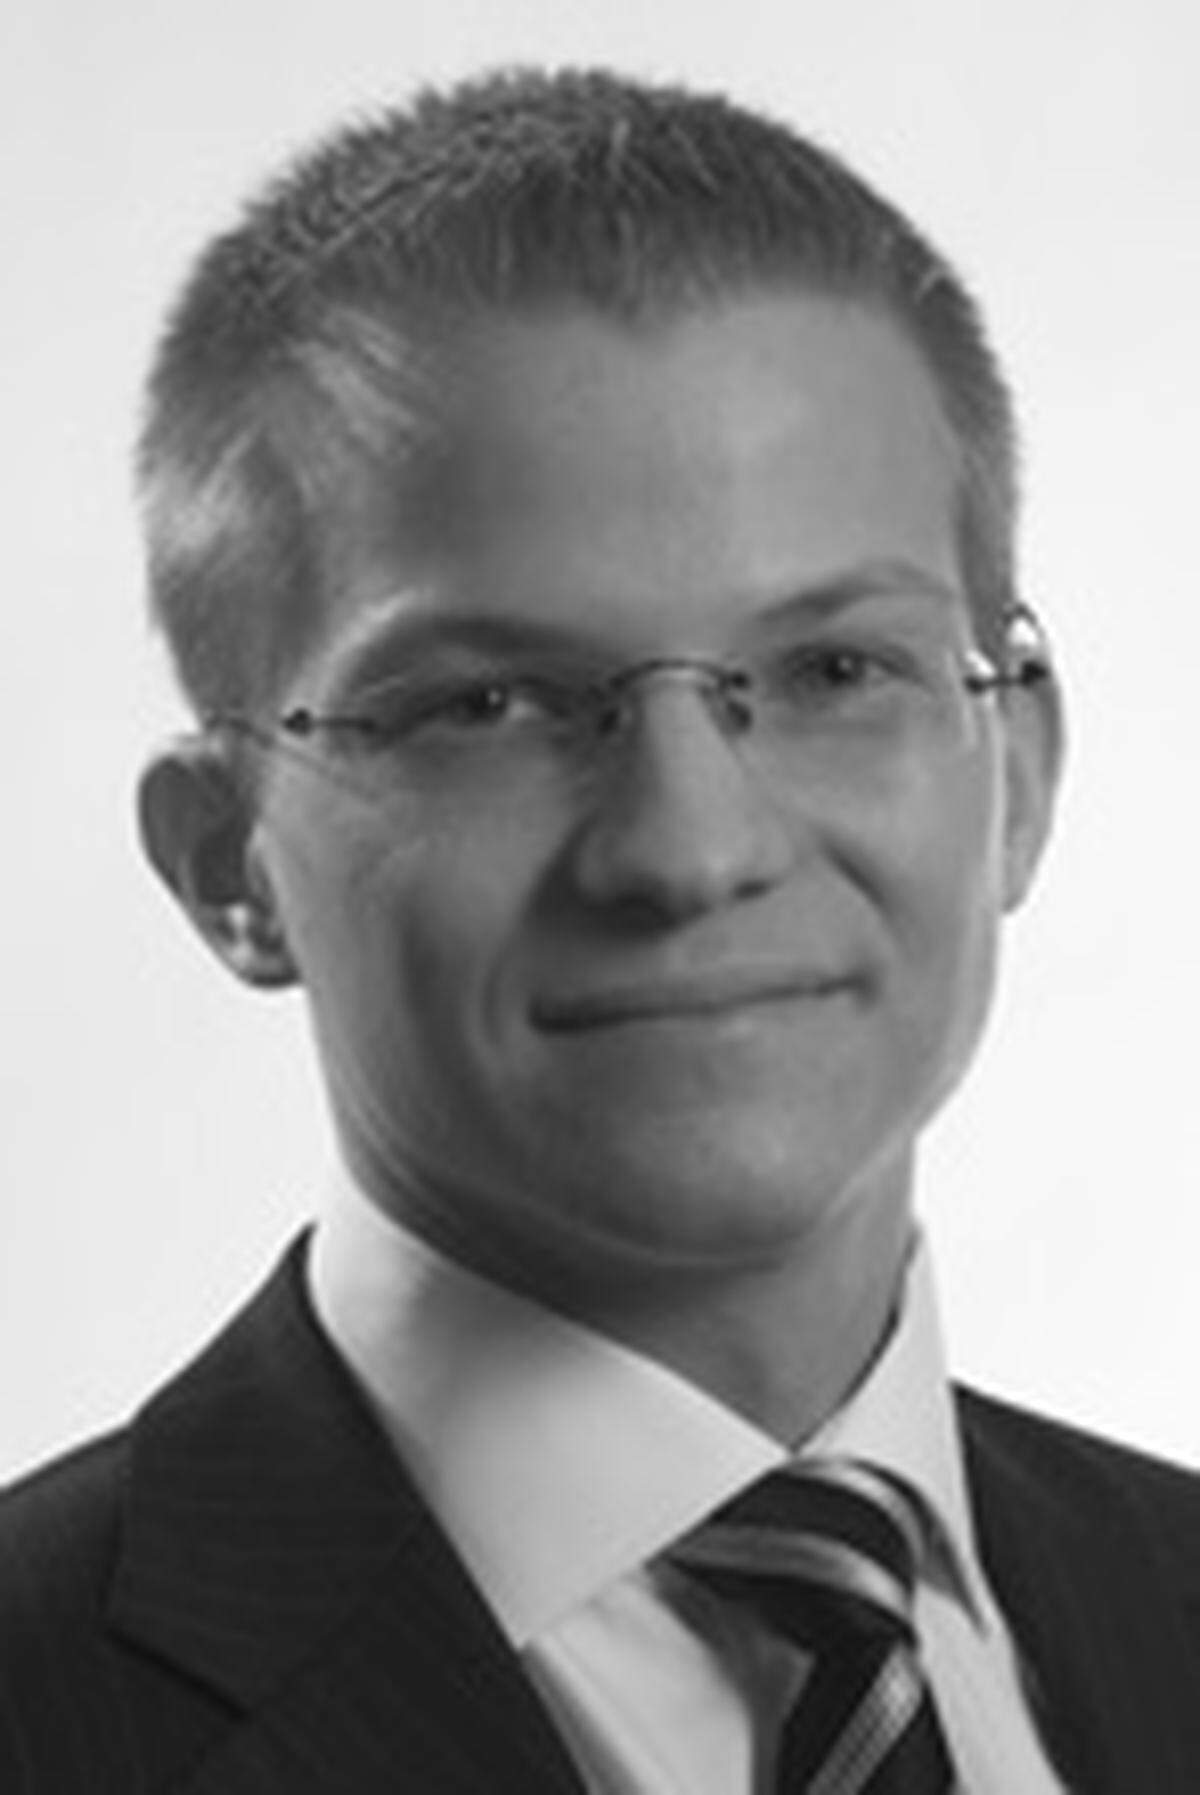 Christoph Kaltenbacher (26) steigt als Senior Business Analyst ins Wiener Büro der Top-Managamentberatung A.T. Kearney ein. Der diplomierte Wirtschaftswissenschafter ist Experte für internationales Steuerrecht und Konzerngestaltung.